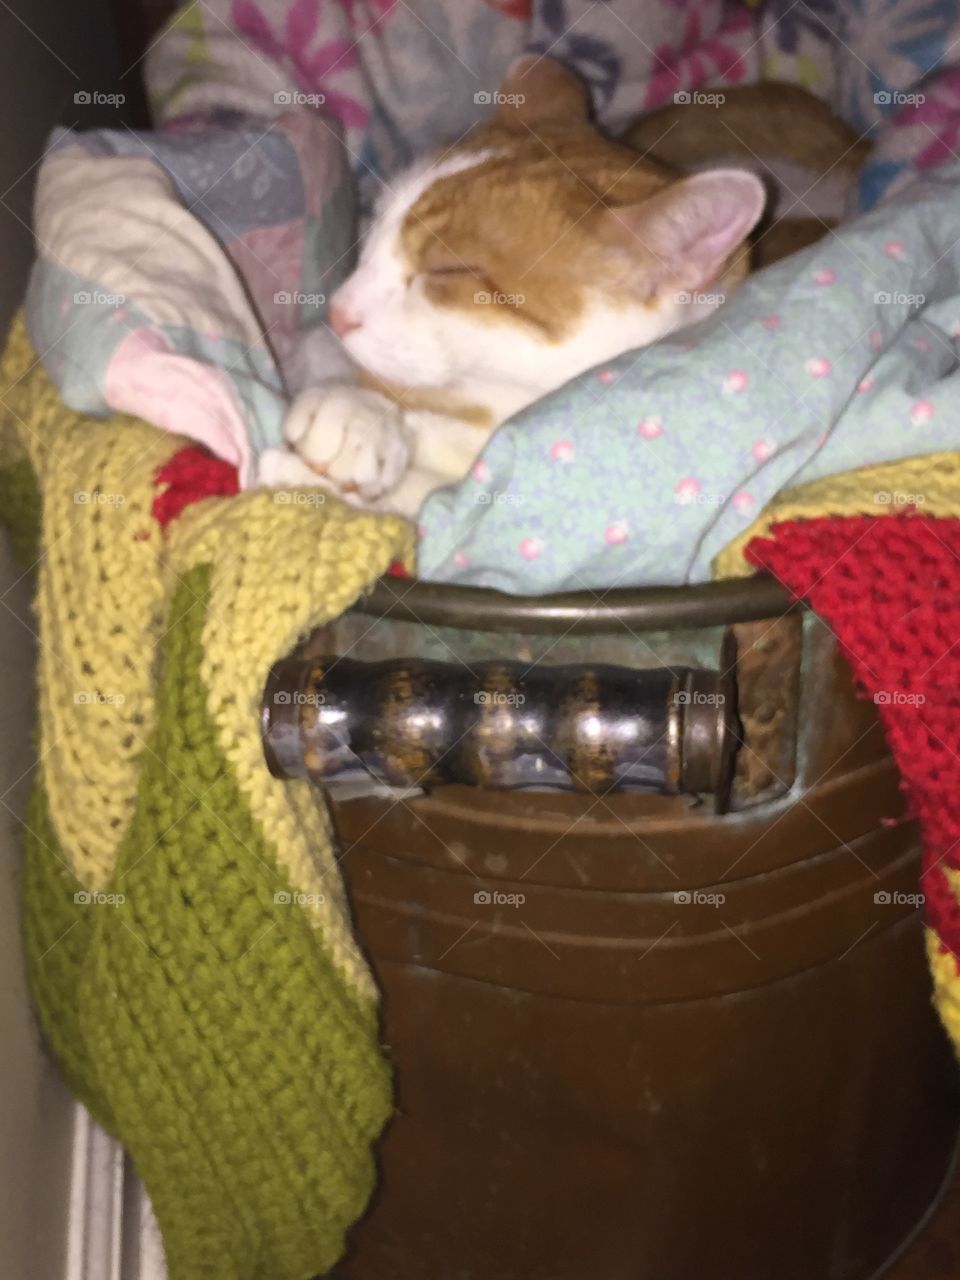 Cat in a tub. Cat in an old copper tub